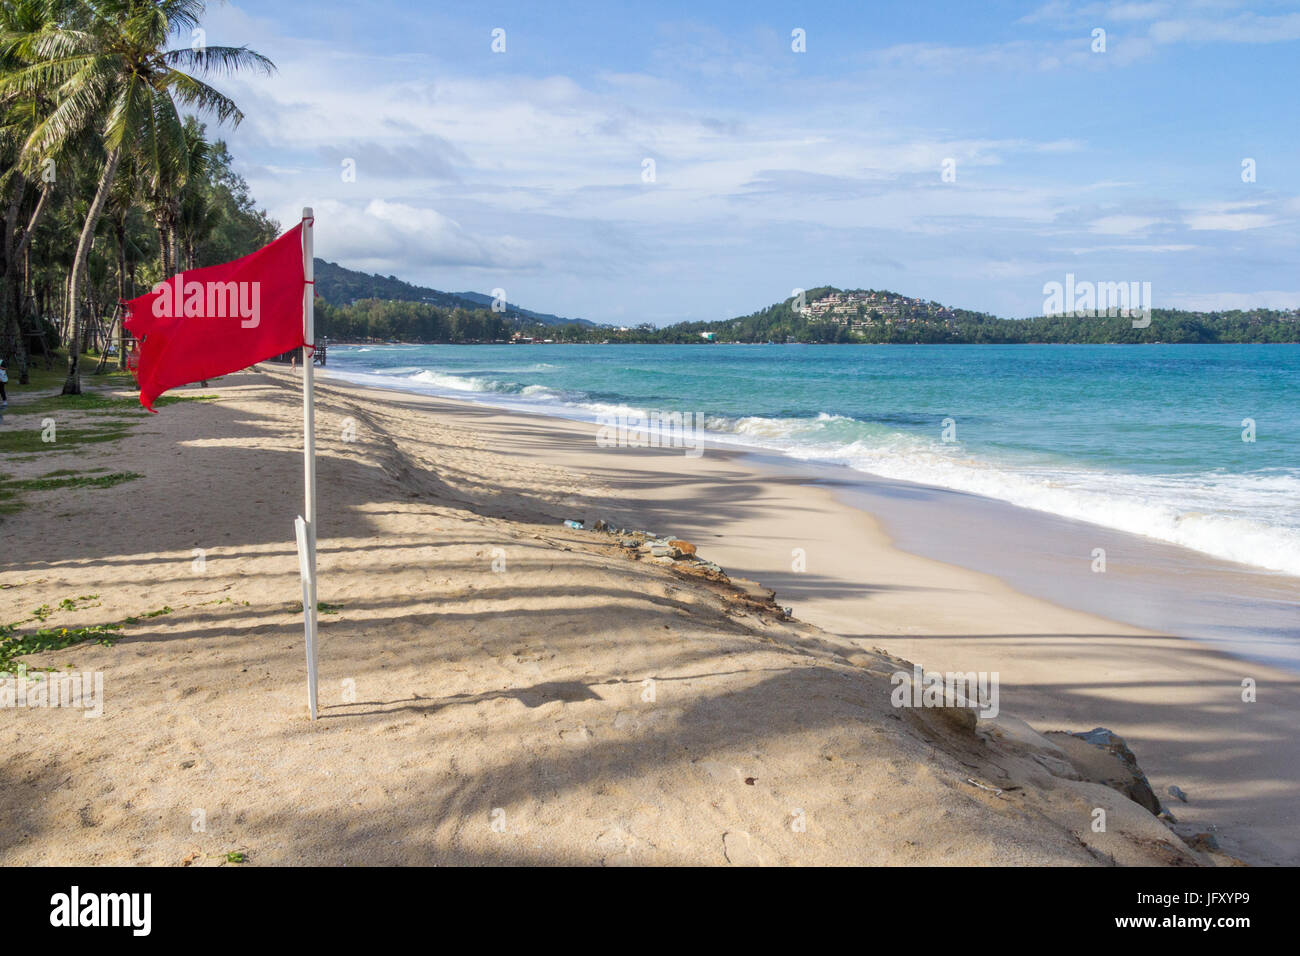 Bandiera rossa avvertimento contro il nuoto a causa di condizioni pericolose su Bang Tao Beach, Phuket, Tailandia Foto Stock